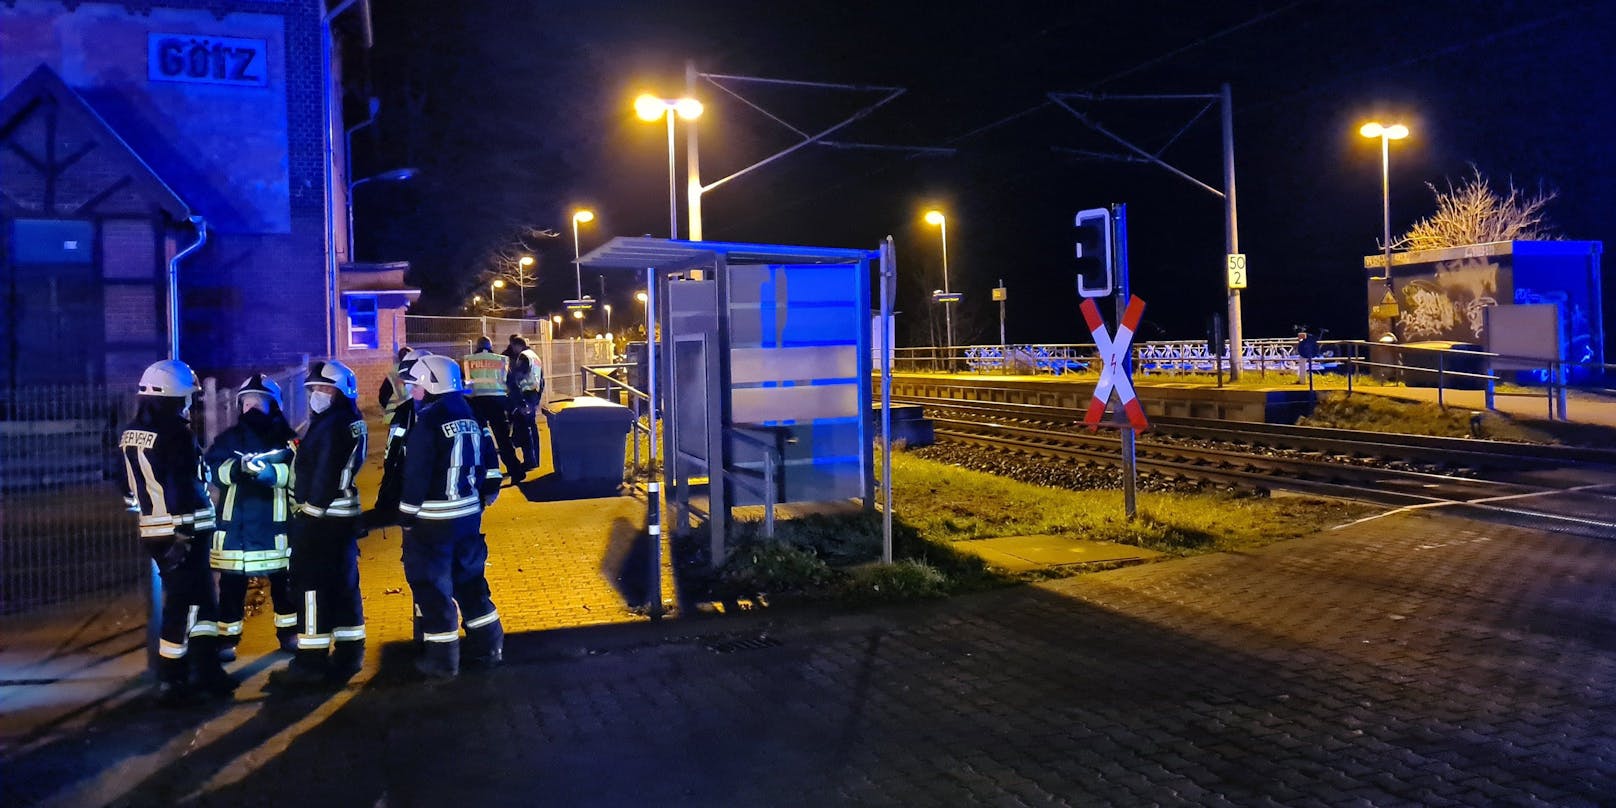 Einsätzkräfte der Feuerwehr nach dem tödlichen Zugunfall in Groß Kreutz, Brandenburg